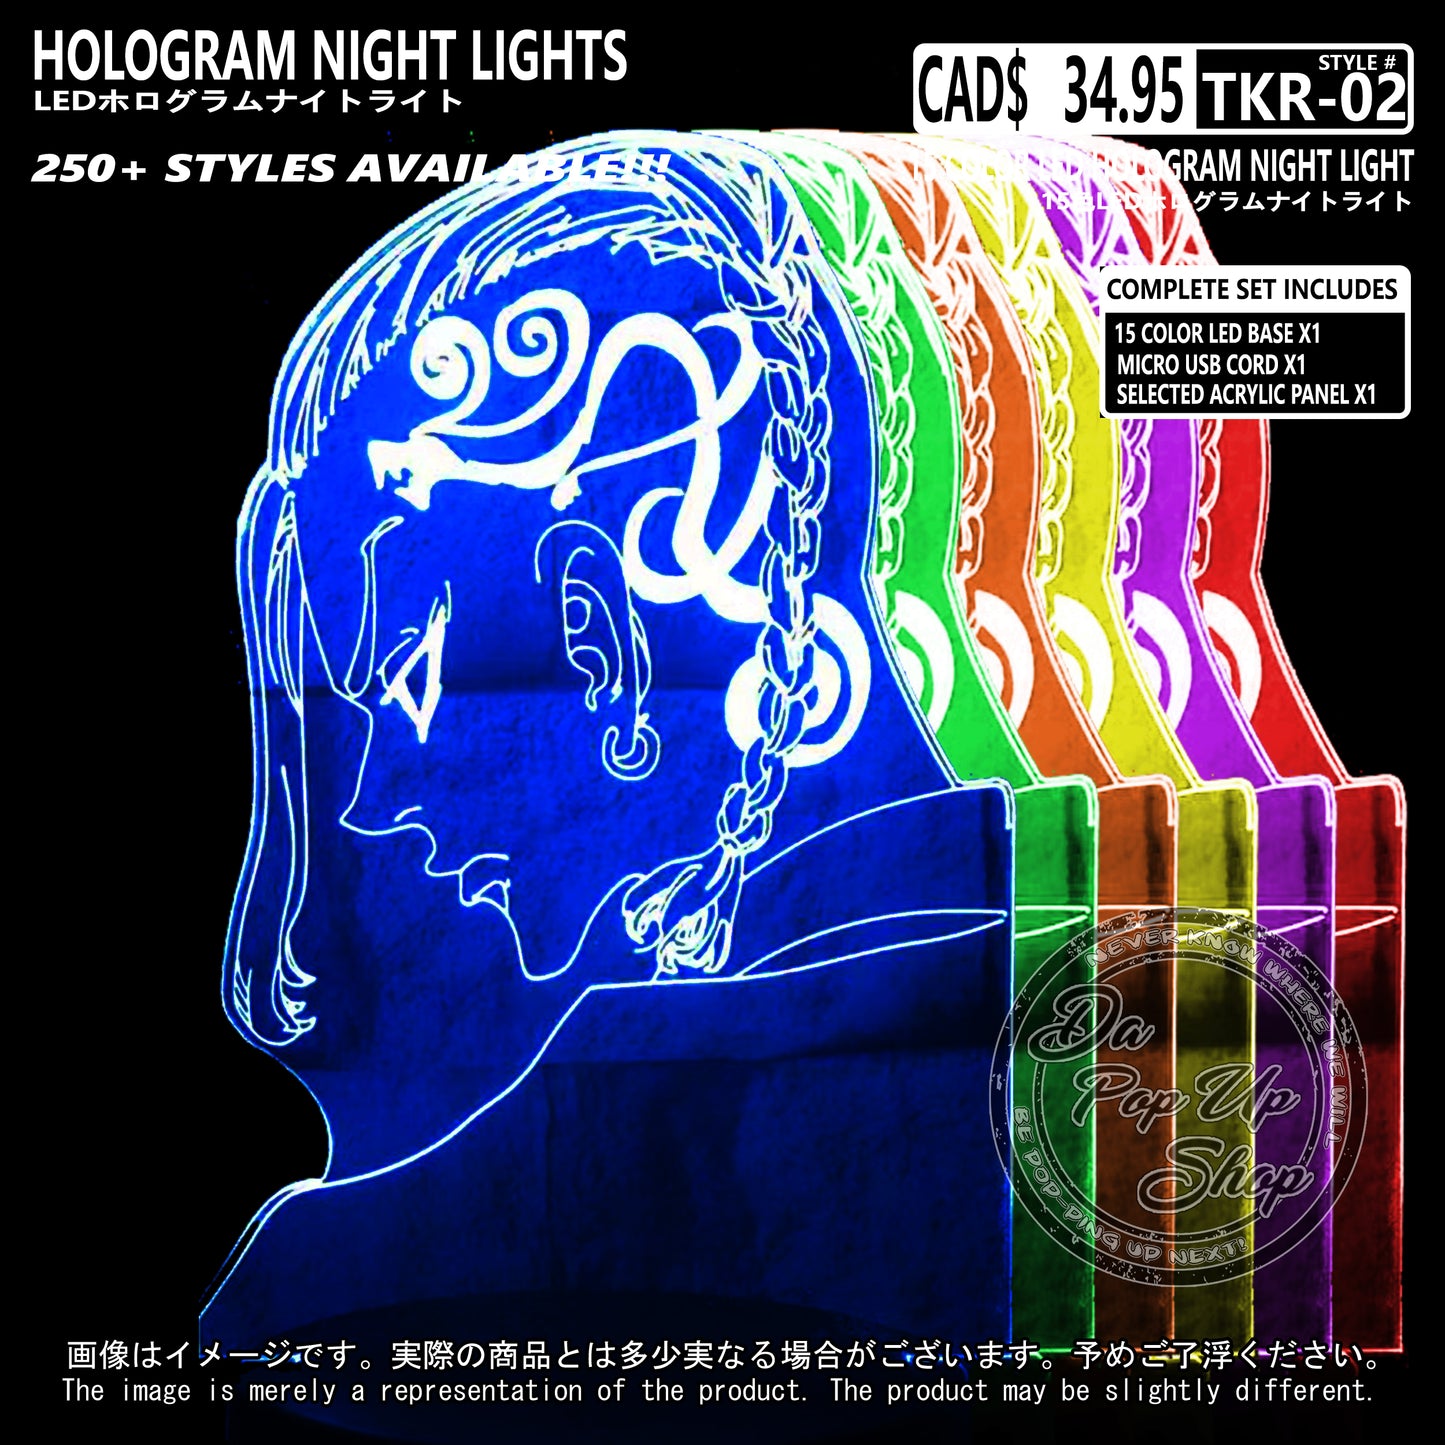 (TKR-02) Tokyo Revenger Hologram LED Night Light